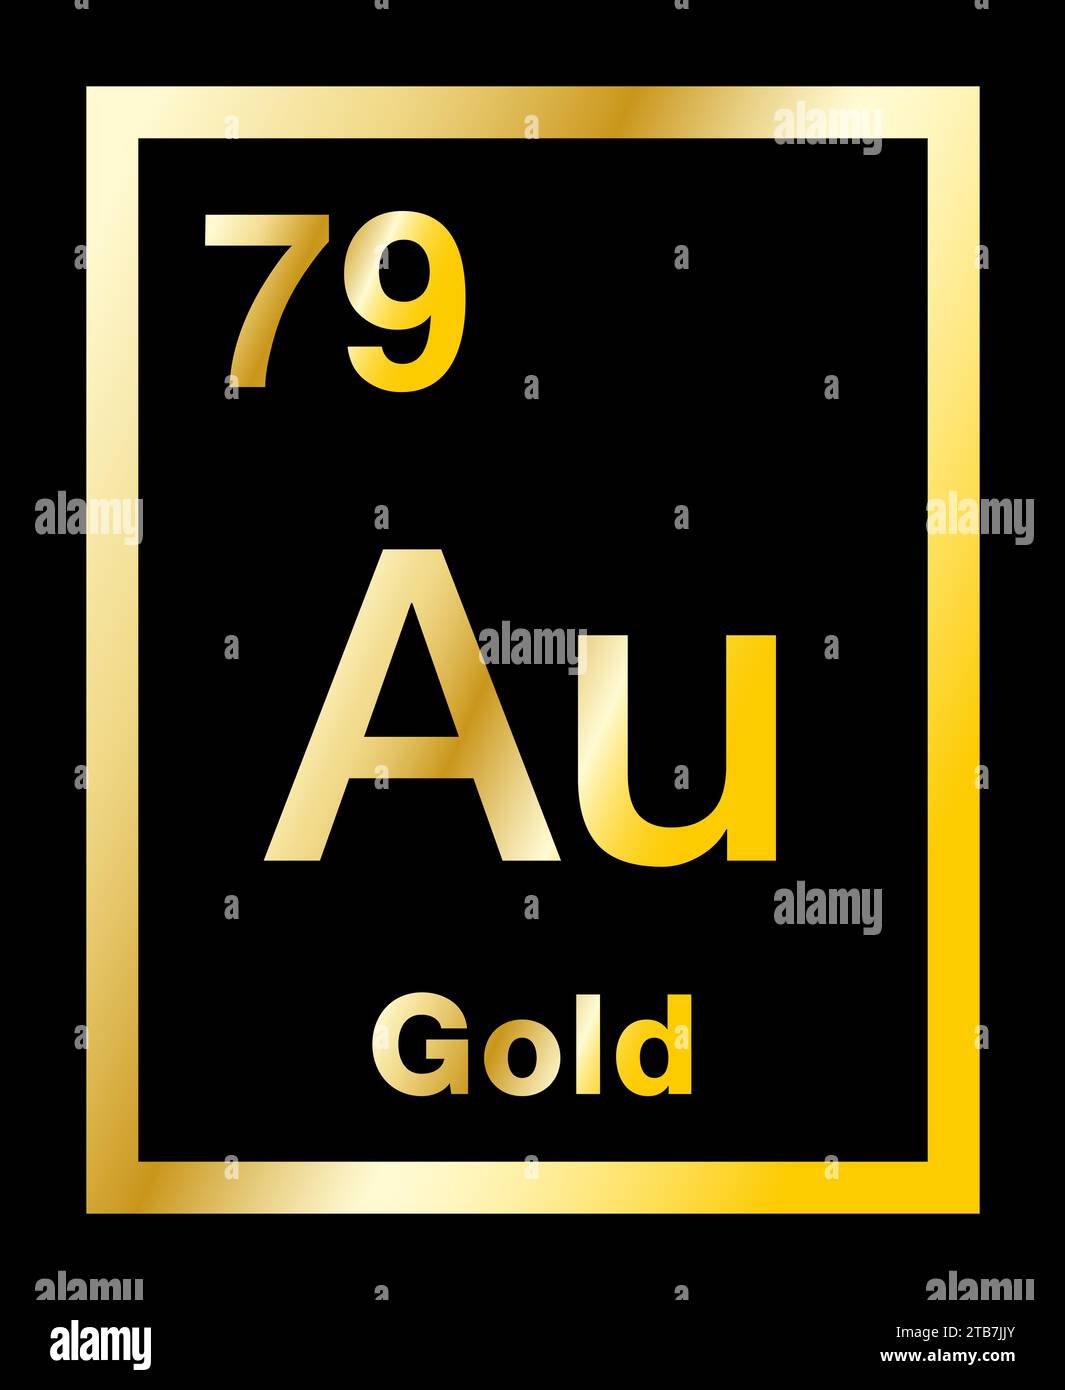 Gold, chemisches Element, aus dem Periodensystem entnommen, mit Gradienten und auf schwarzem Hintergrund. Edles und edles Metall mit chemischem Symbol Au. Stockfoto